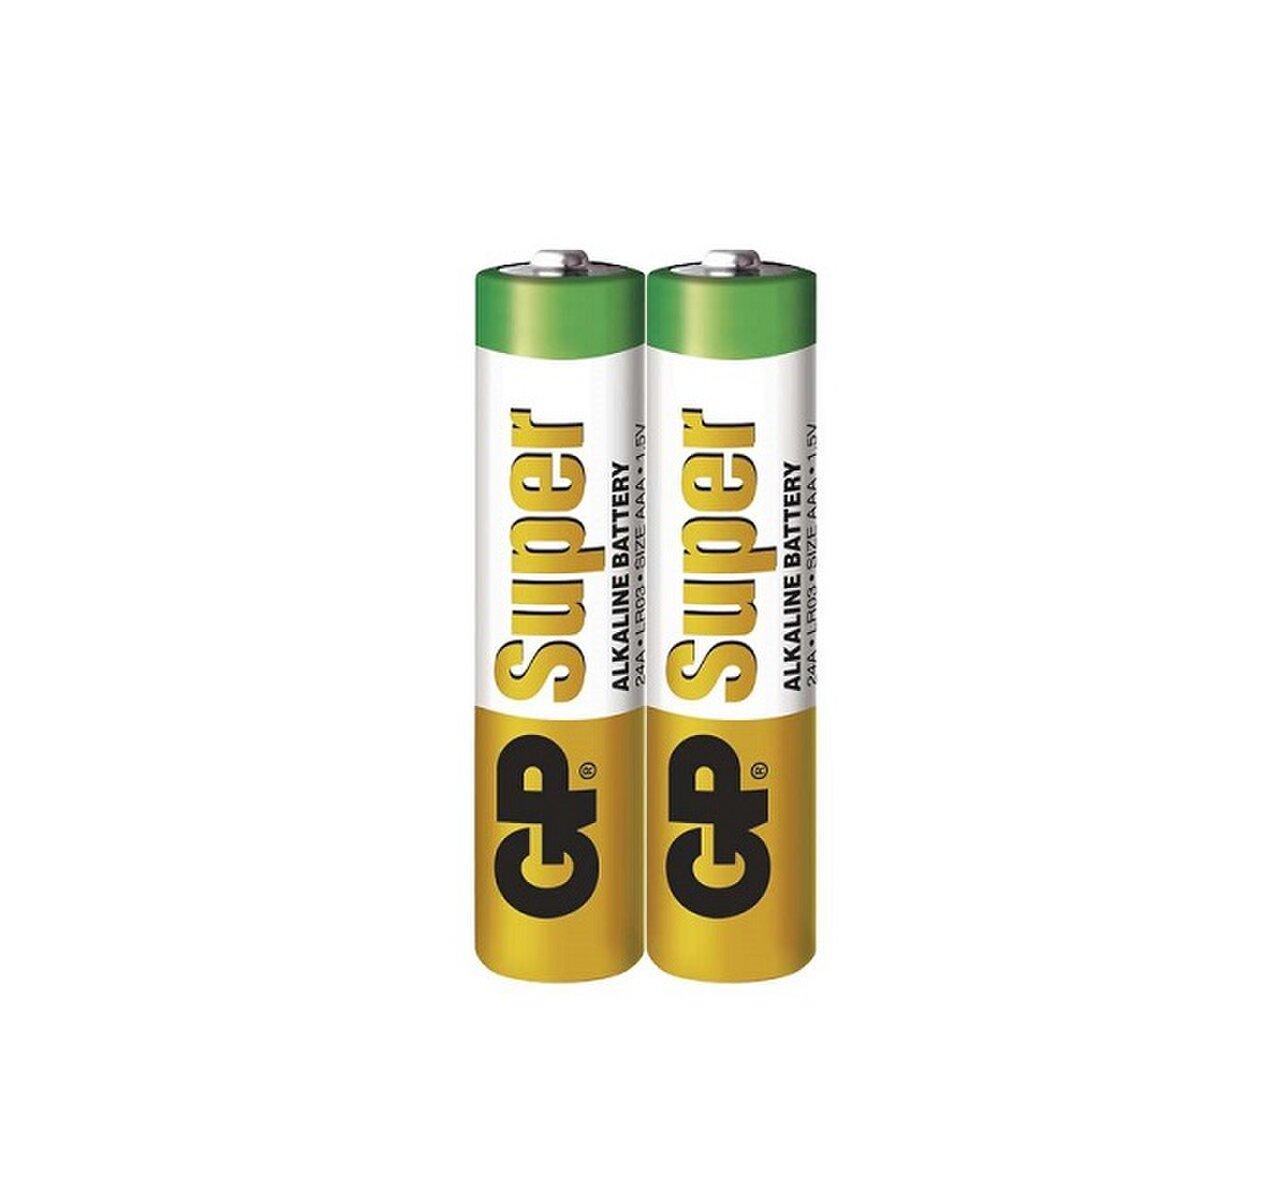 Batéria LR03 1,5V GP B1310 Super alkalická folia                                